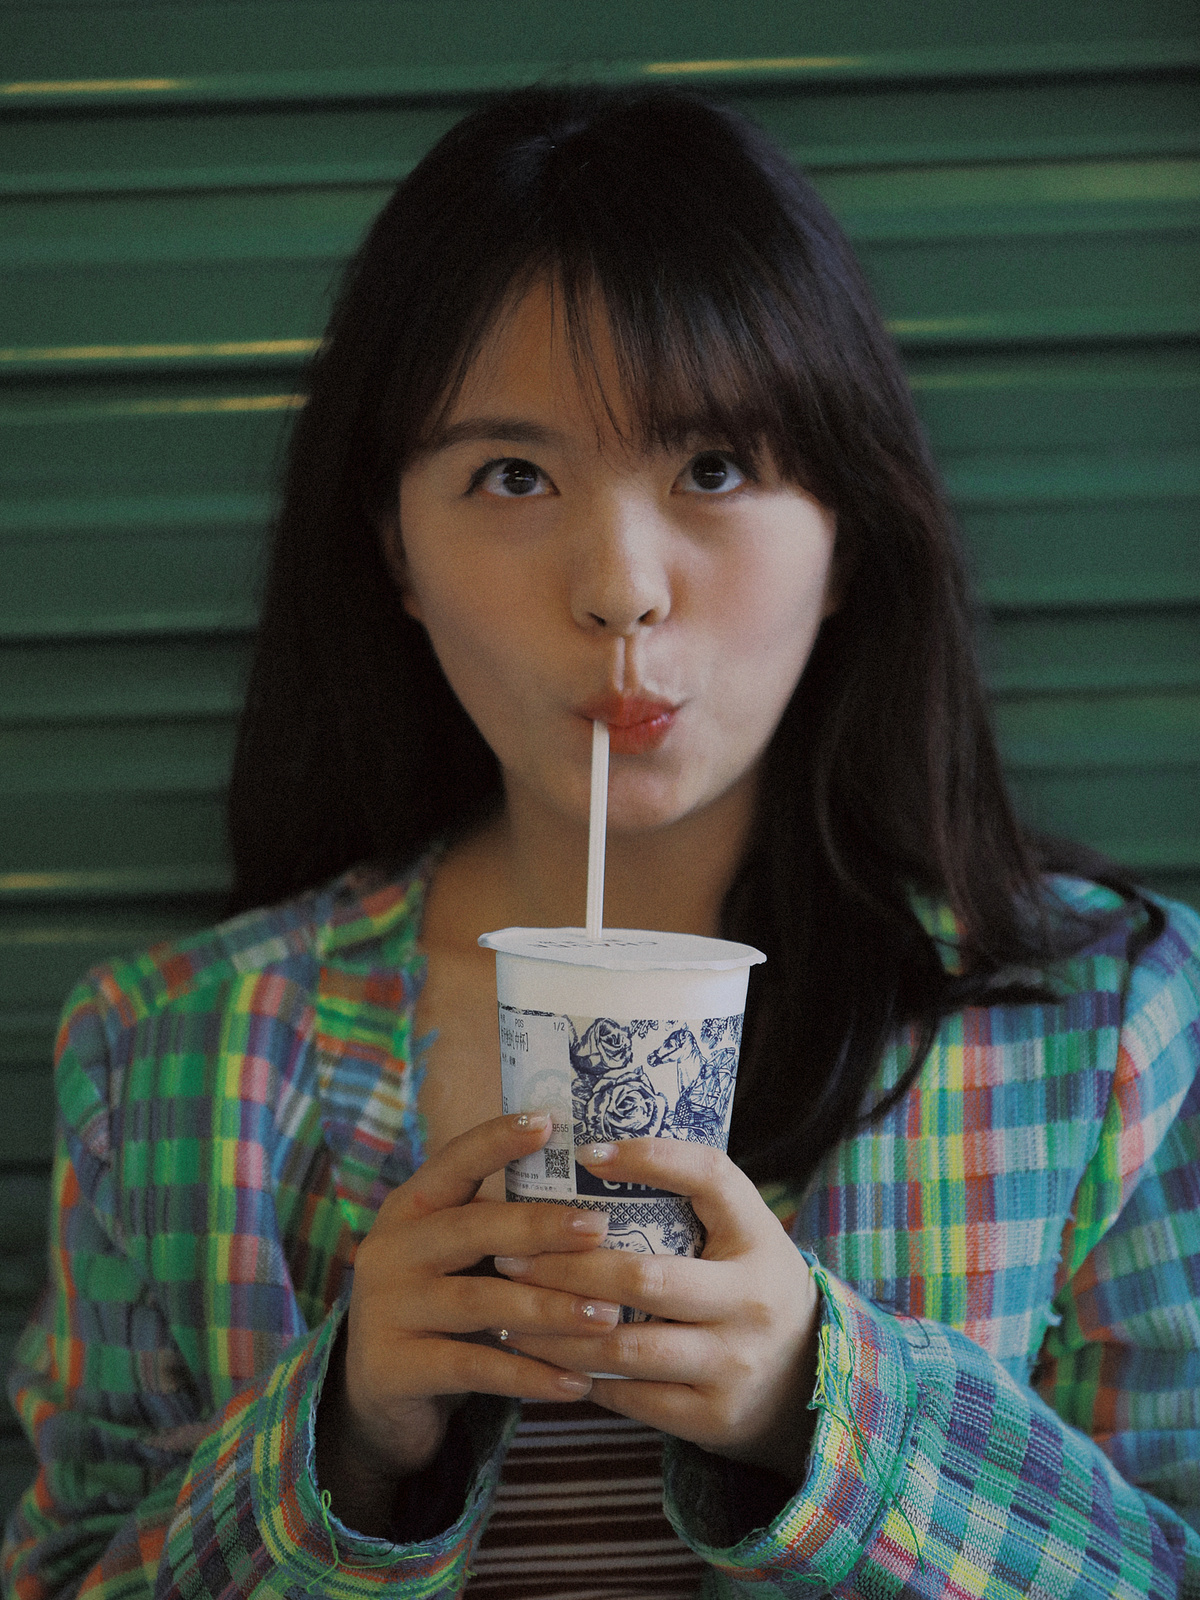 一个穿着格子衬衫的年轻女子正在用吸管喝着杯子里的饮料。